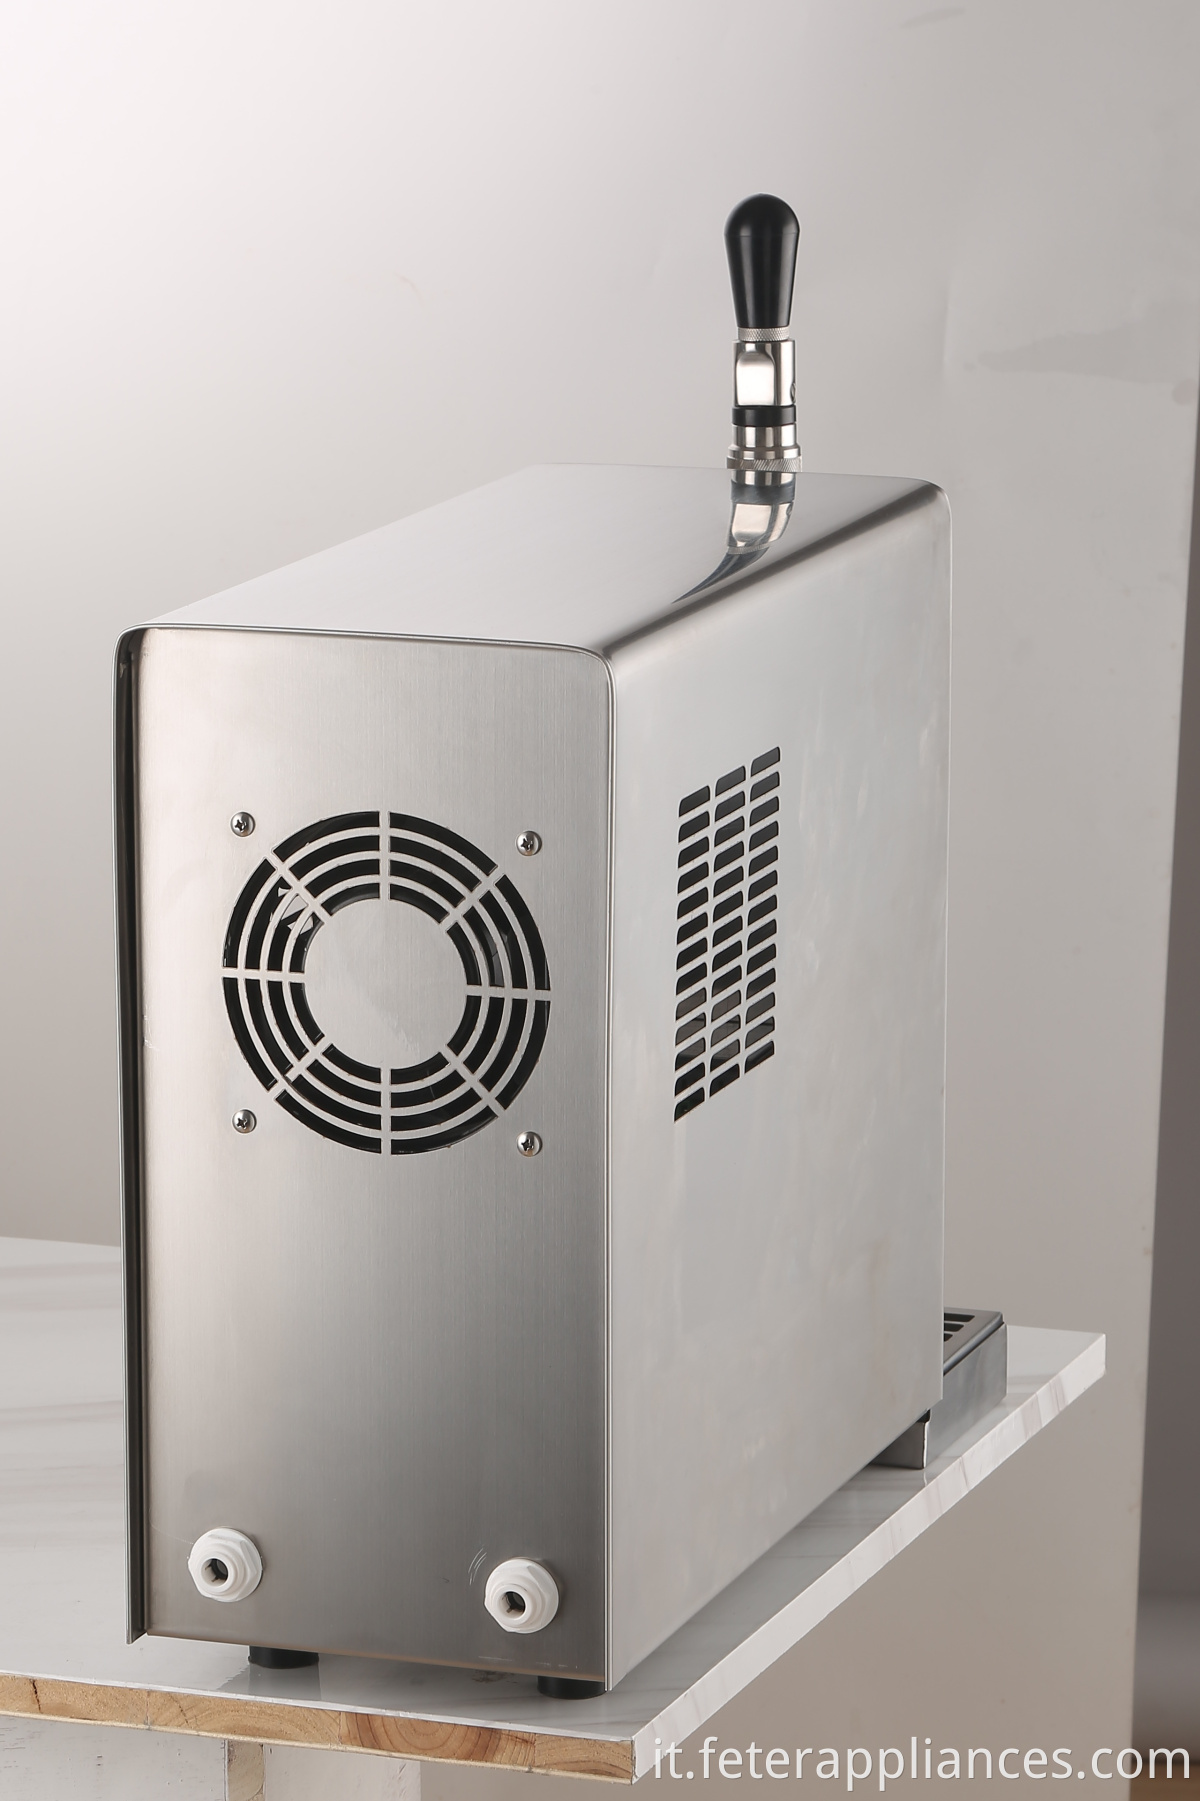 Distributore di refrigeratori per birra alla spina con dispositivo di raffreddamento del corpo in acciaio inossidabile a 1 rubinetto o 2 rubinetti